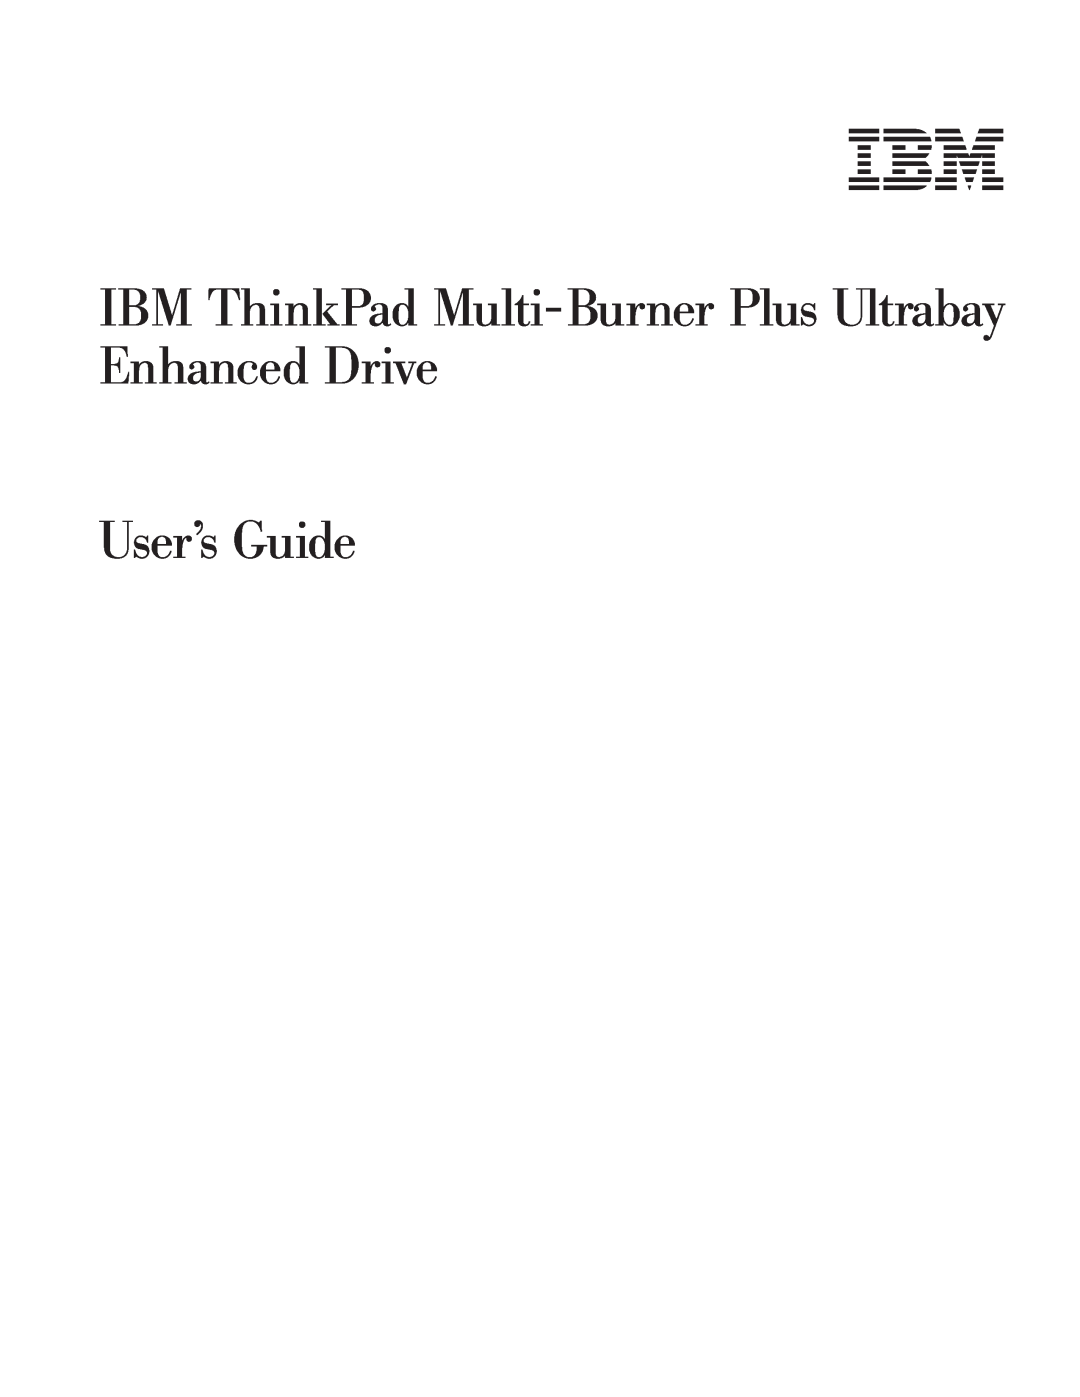 IBM 73P3315 manual IBM ThinkPad Multi-Burner Plus Ultrabay Enhanced Drive User’s Guide 